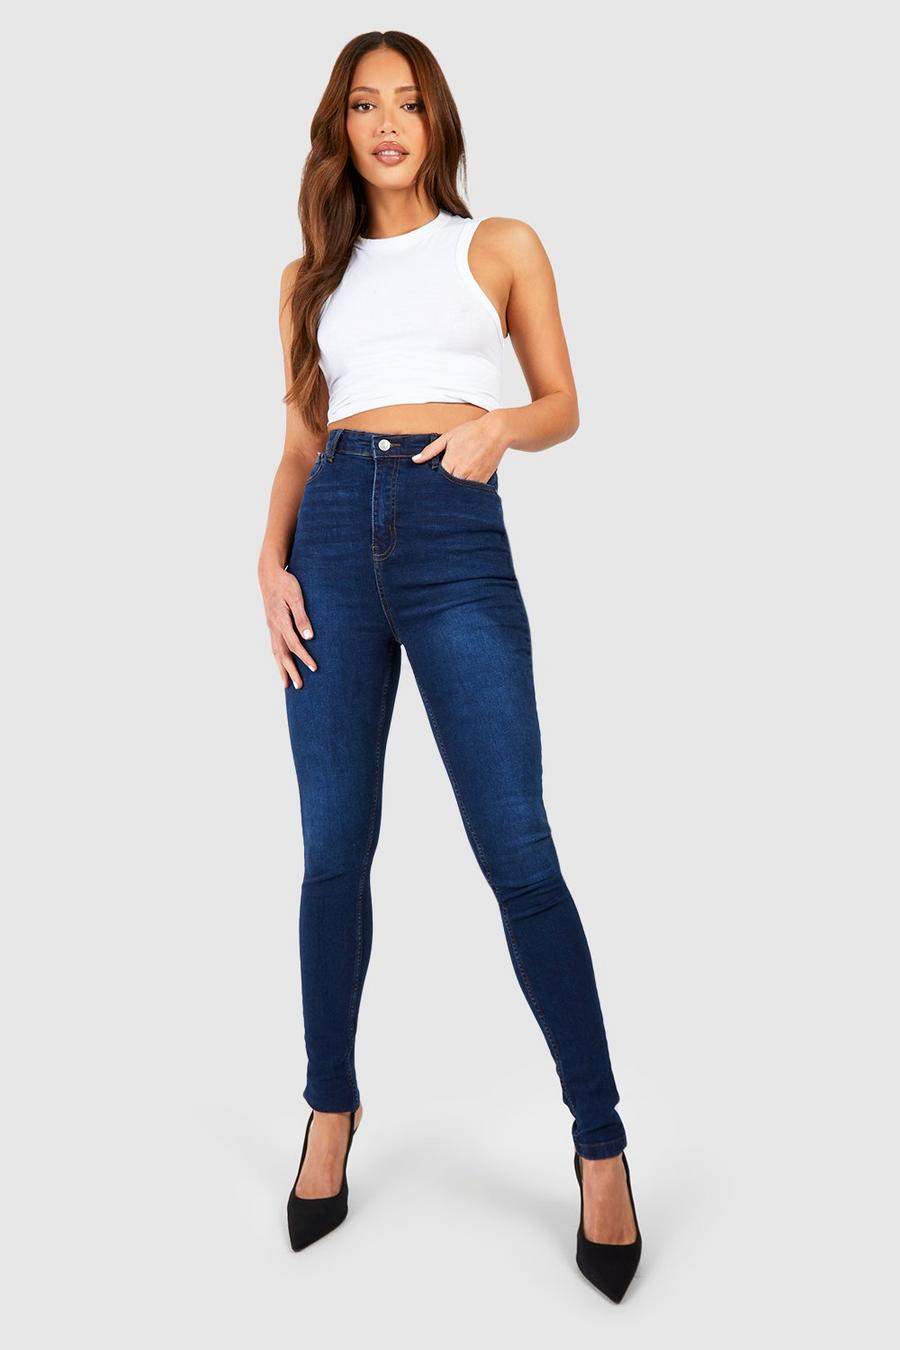 Jeans Tall a vita media Skinny Fit blu scuro, 91 cm, Dark blue